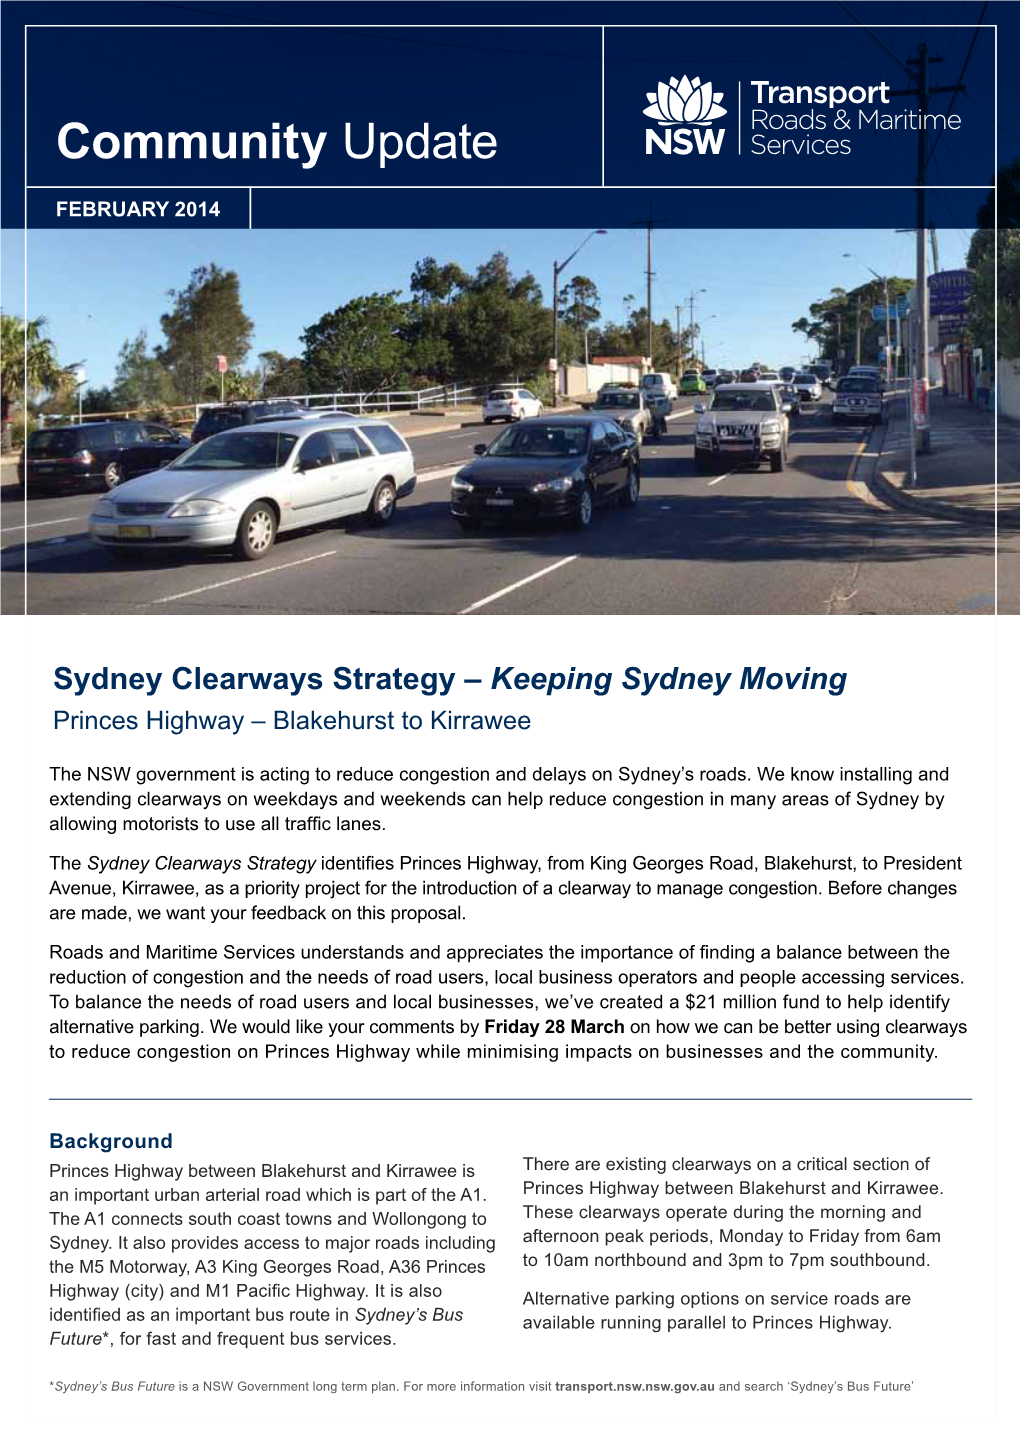 Keeping Sydney Moving. Princes Highway – Blakehurst to Kirrawee